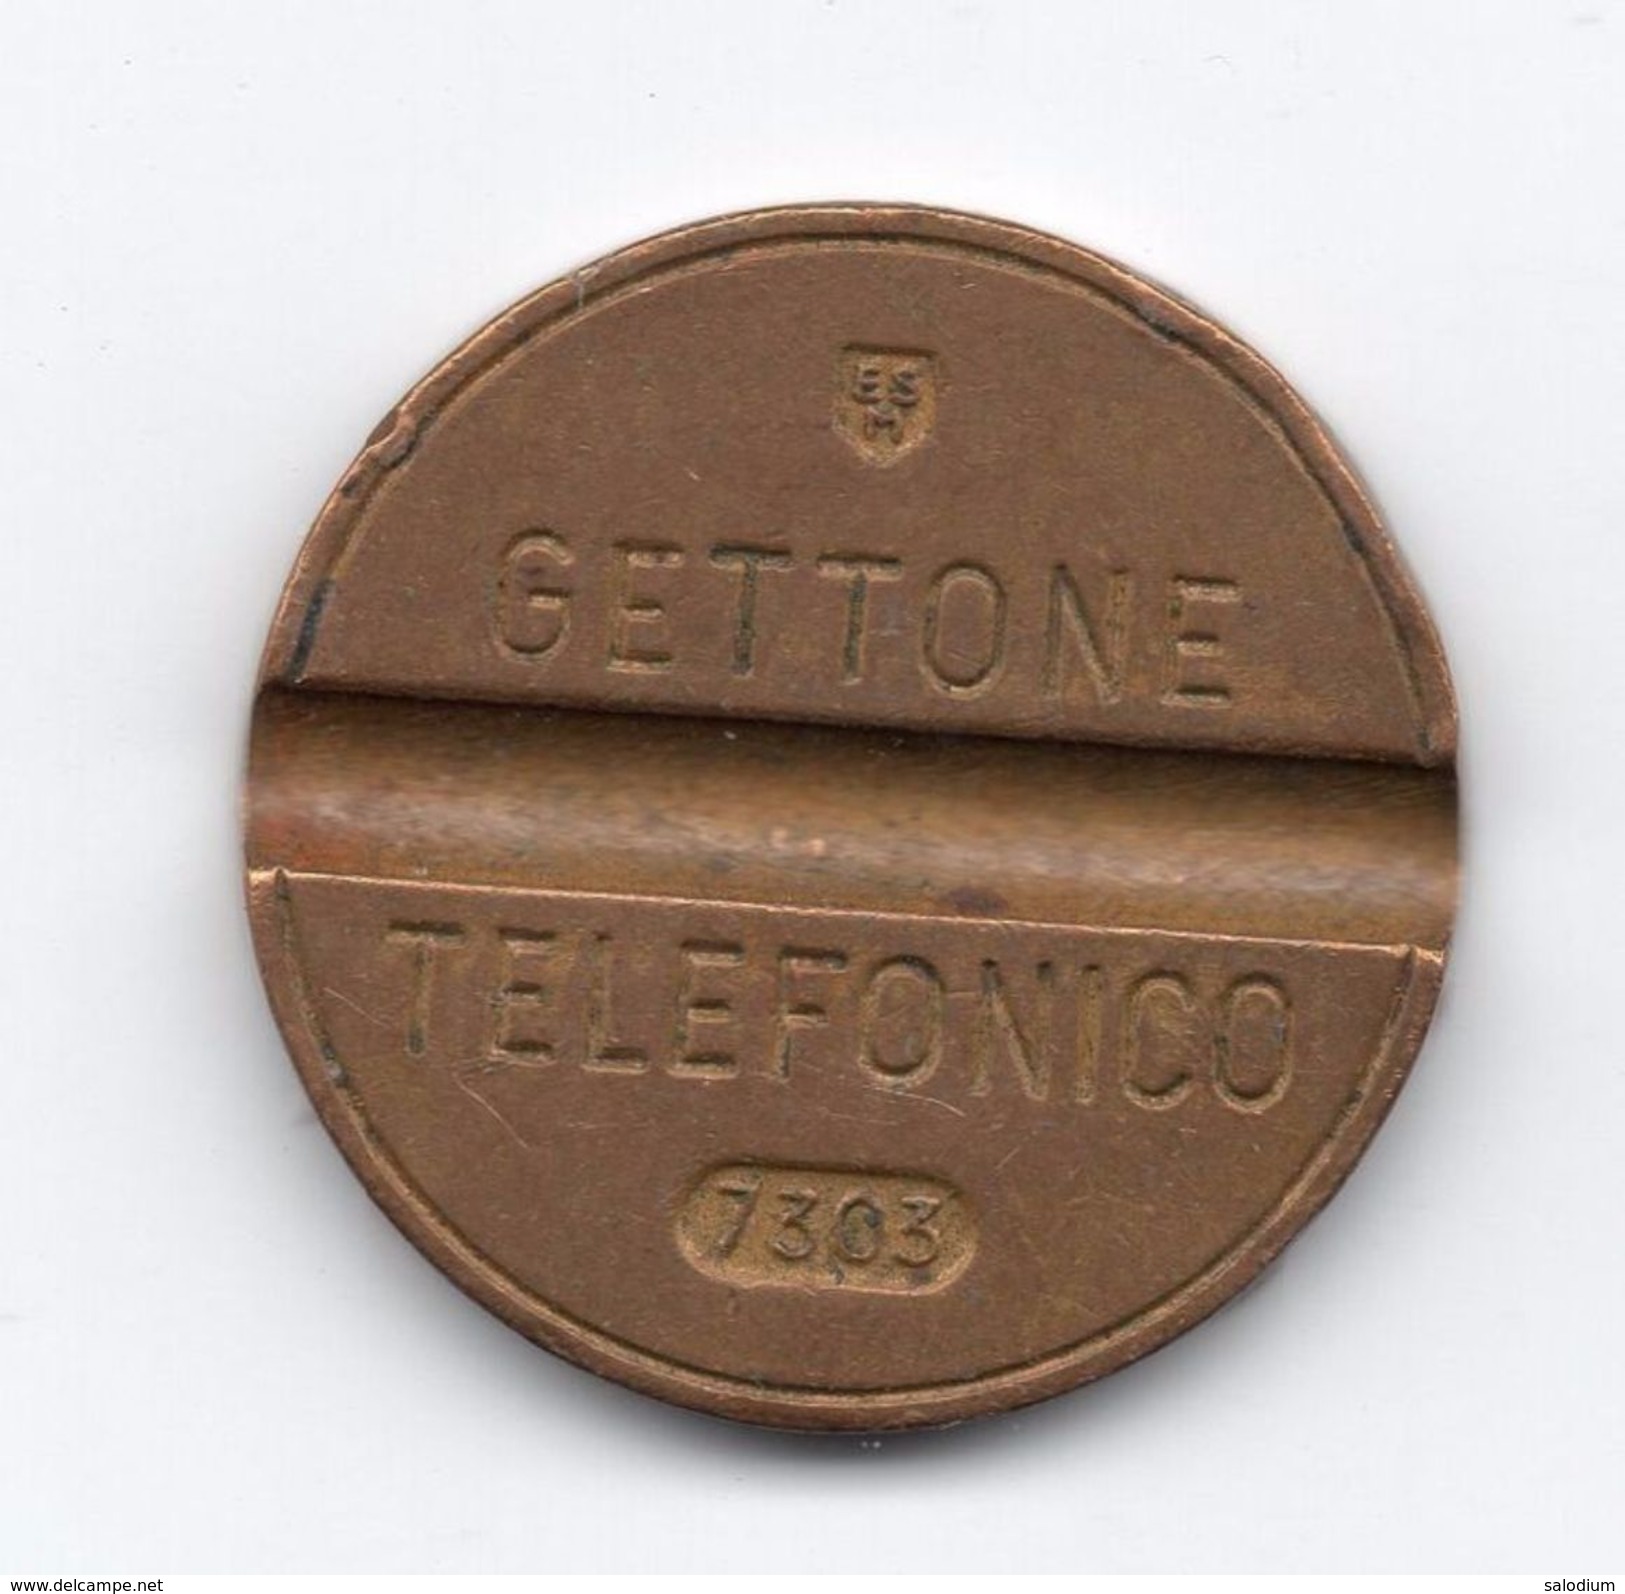 Gettone Telefonico 7303 Token Telephone - (Id-687) - Professionnels/De Société